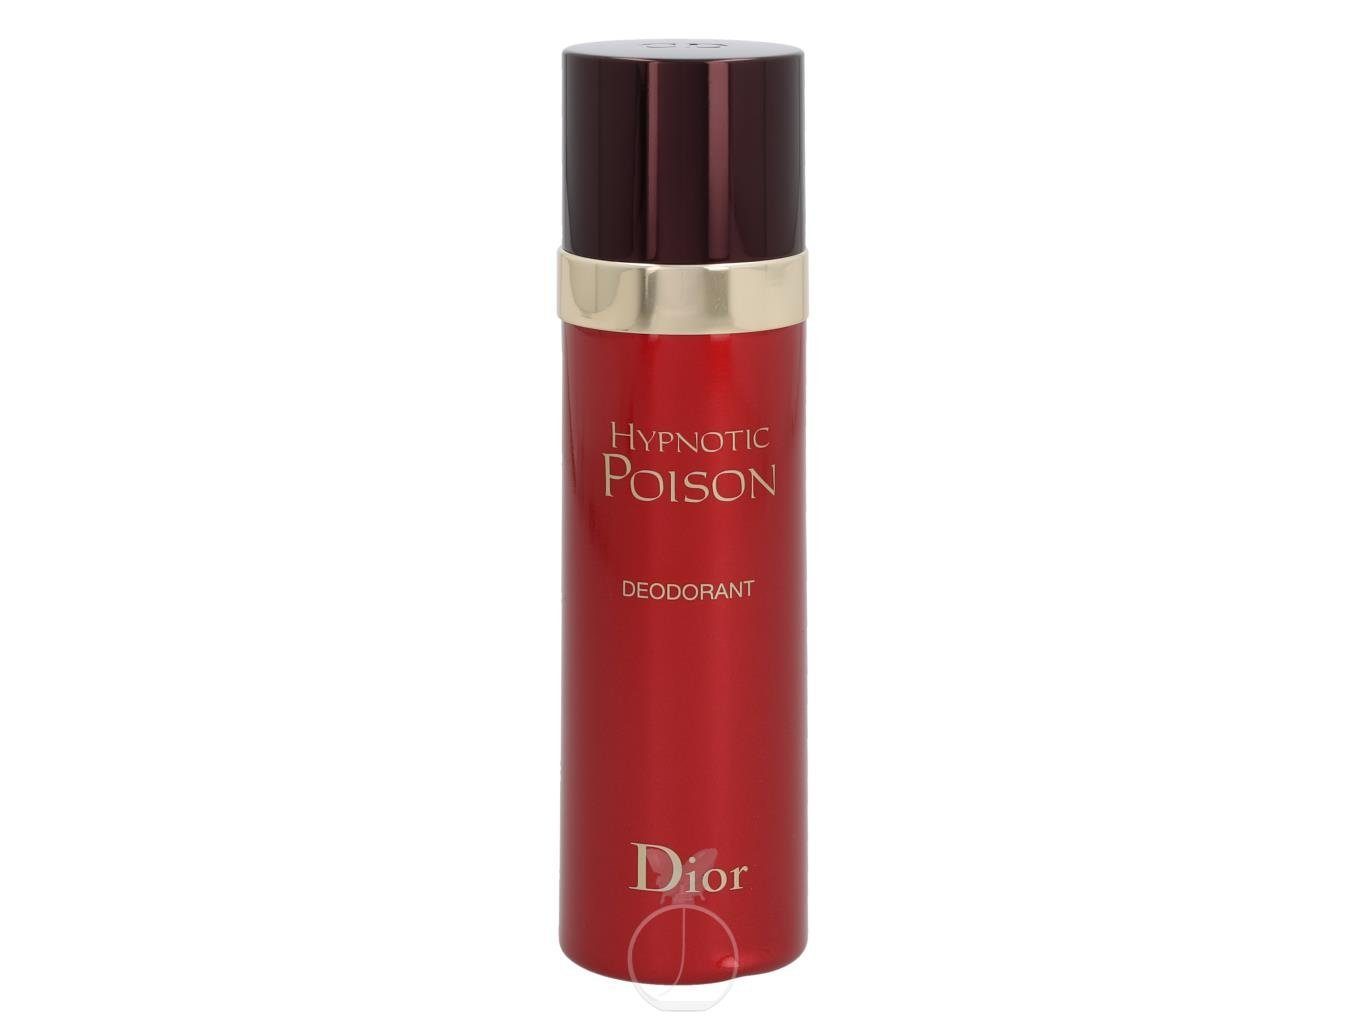 Dior Körperpflegeduft Deodorant ml Poison Hypnotic Dior 100